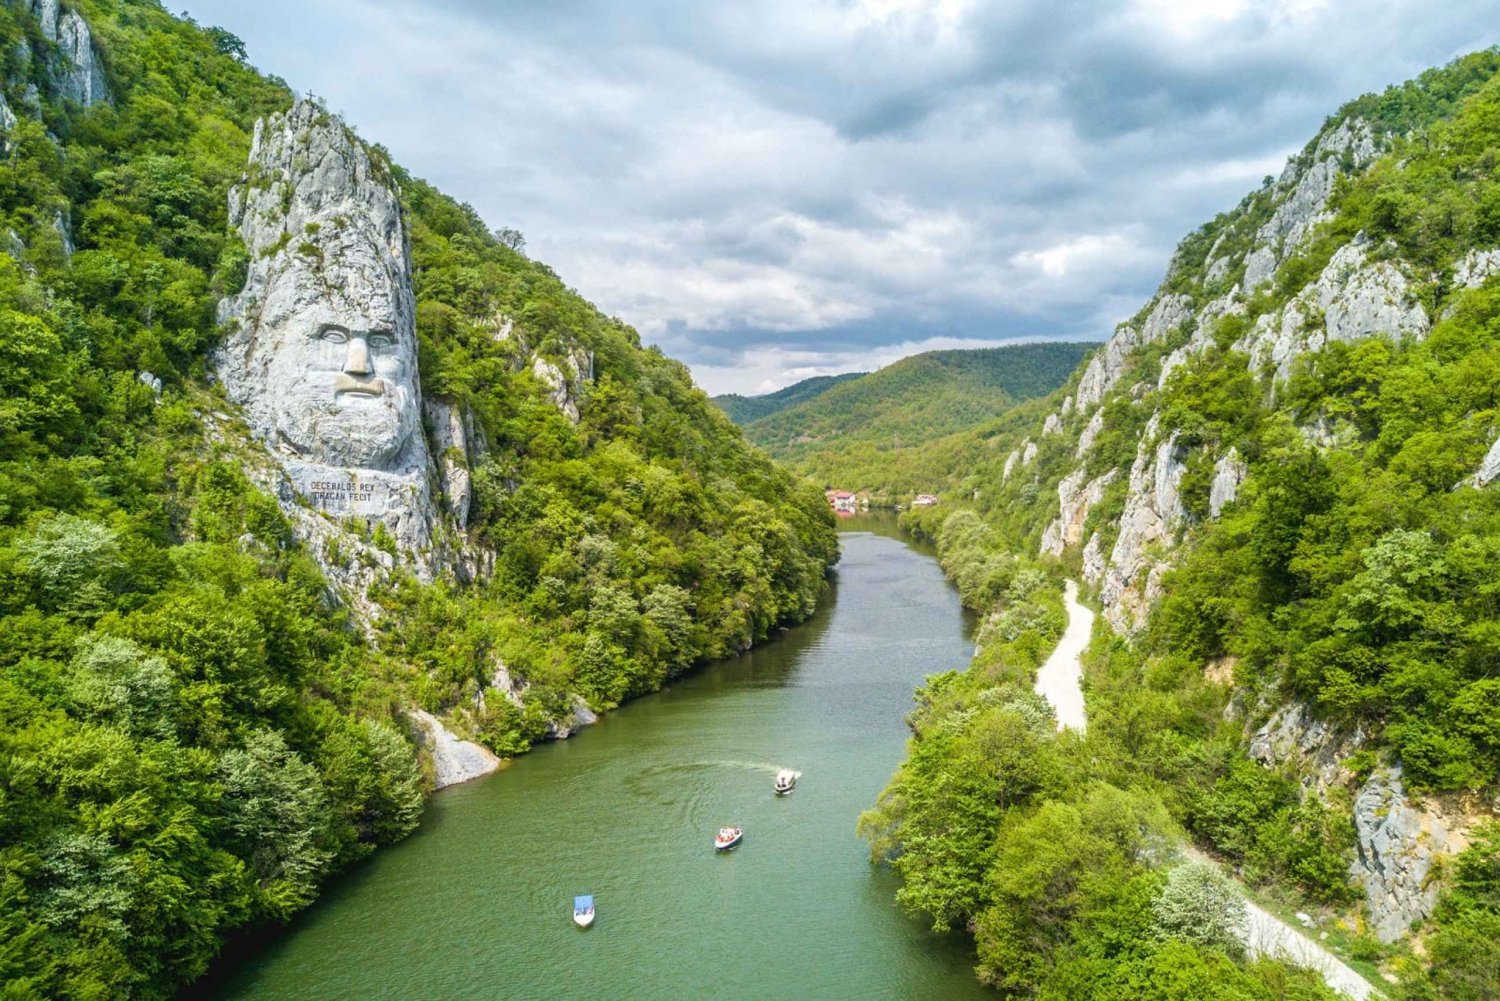 Belgrad: Fahrt auf der Blauen Donau und 1-stündige Speedboat-Fahrt